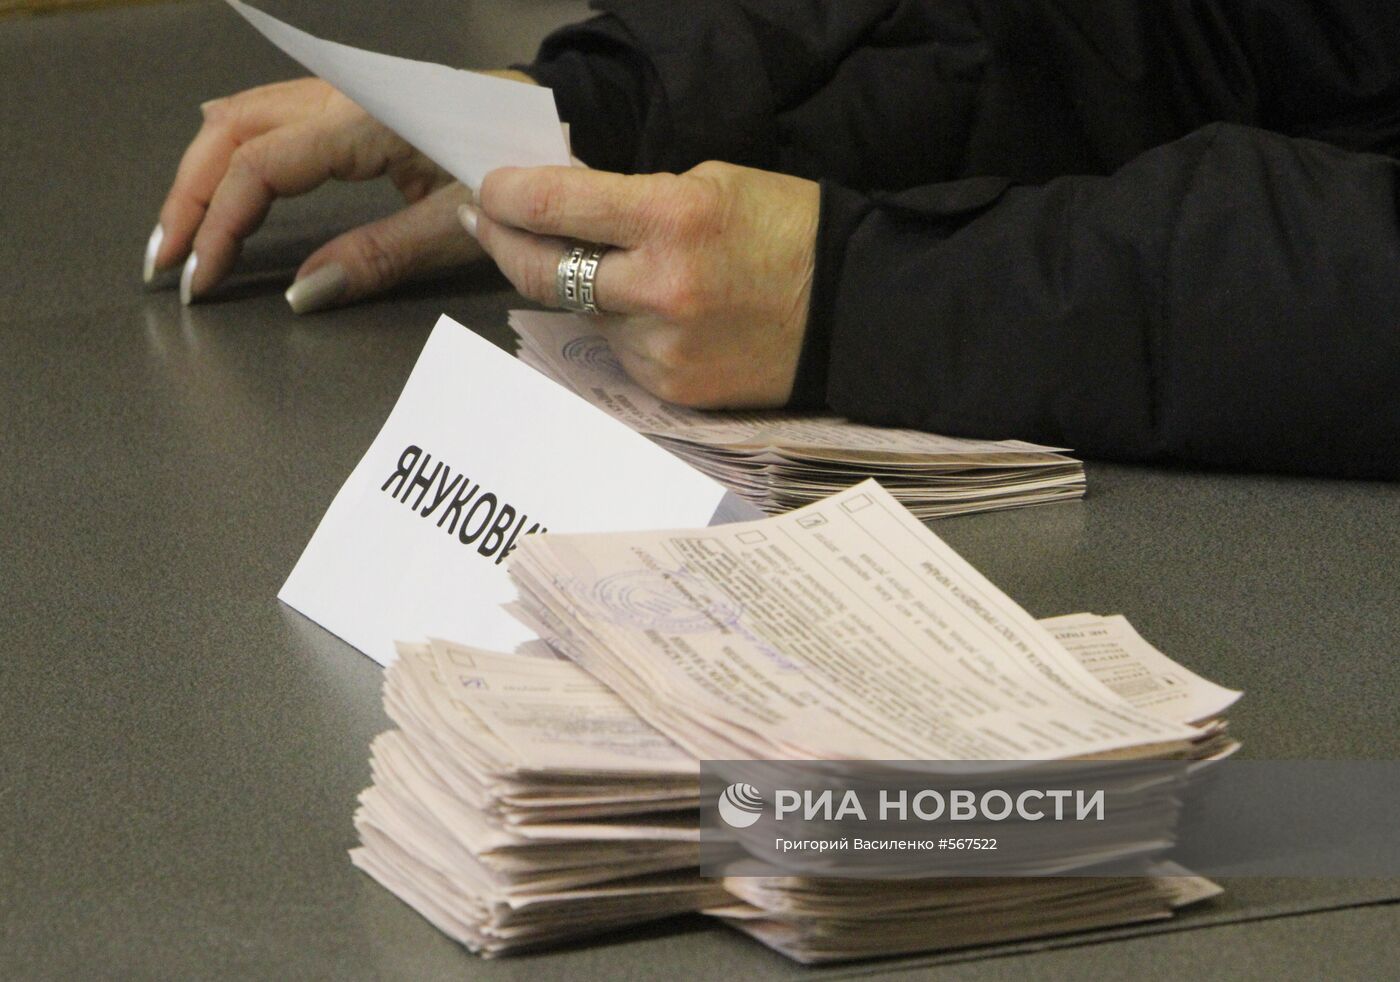 Подсчет голосов на одном из избирательных участков города Киева